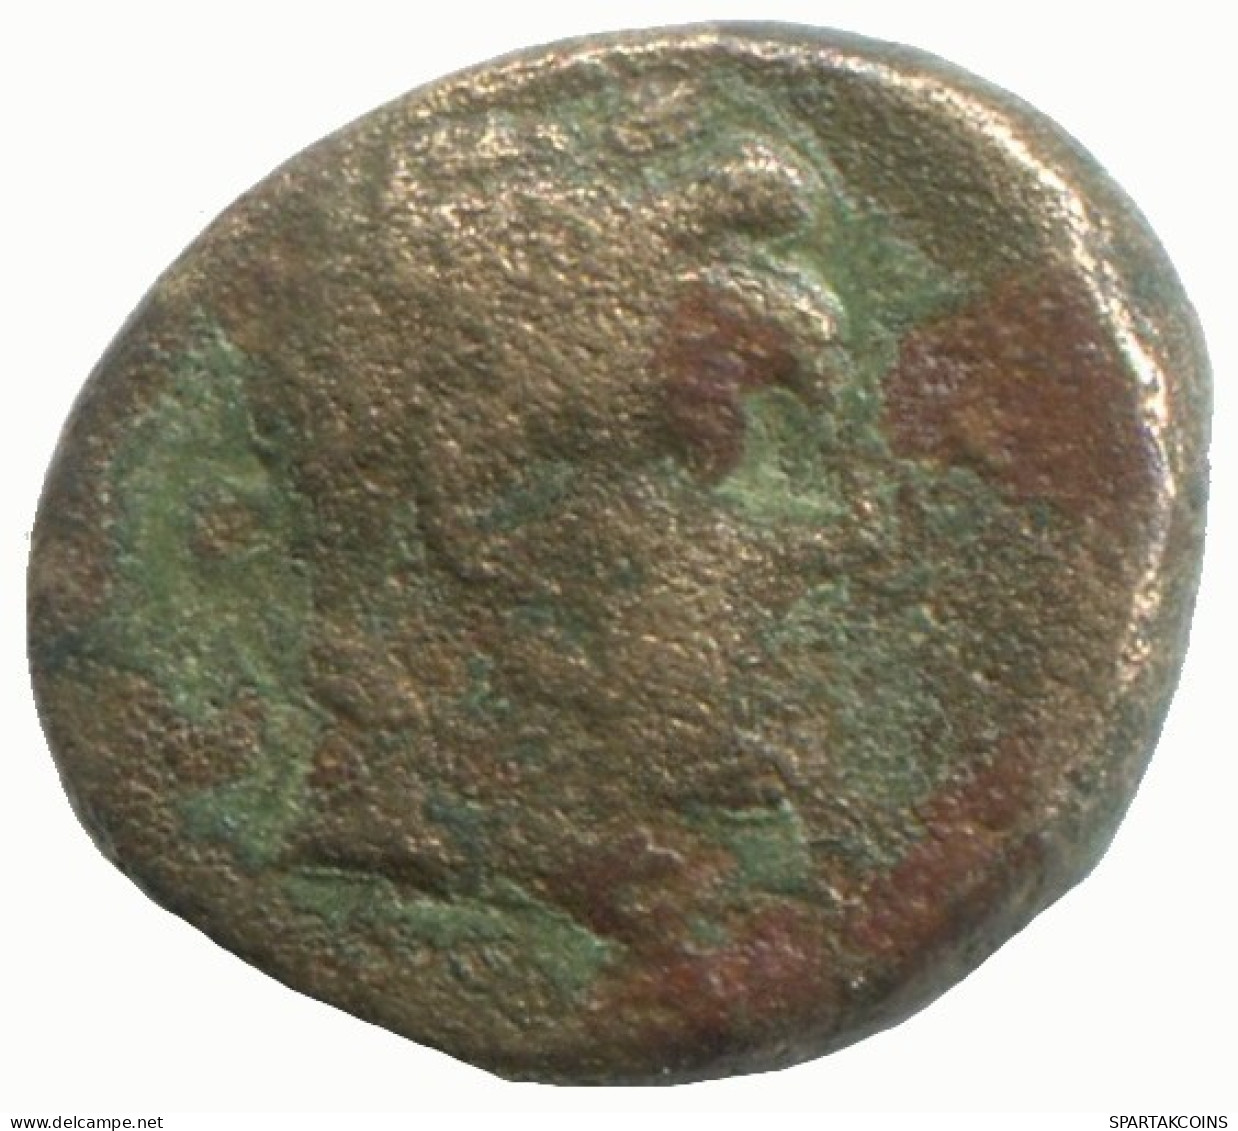 Auténtico Original GRIEGO ANTIGUO Moneda 1.6g/12mm #NNN1290.9.E.A - Griechische Münzen